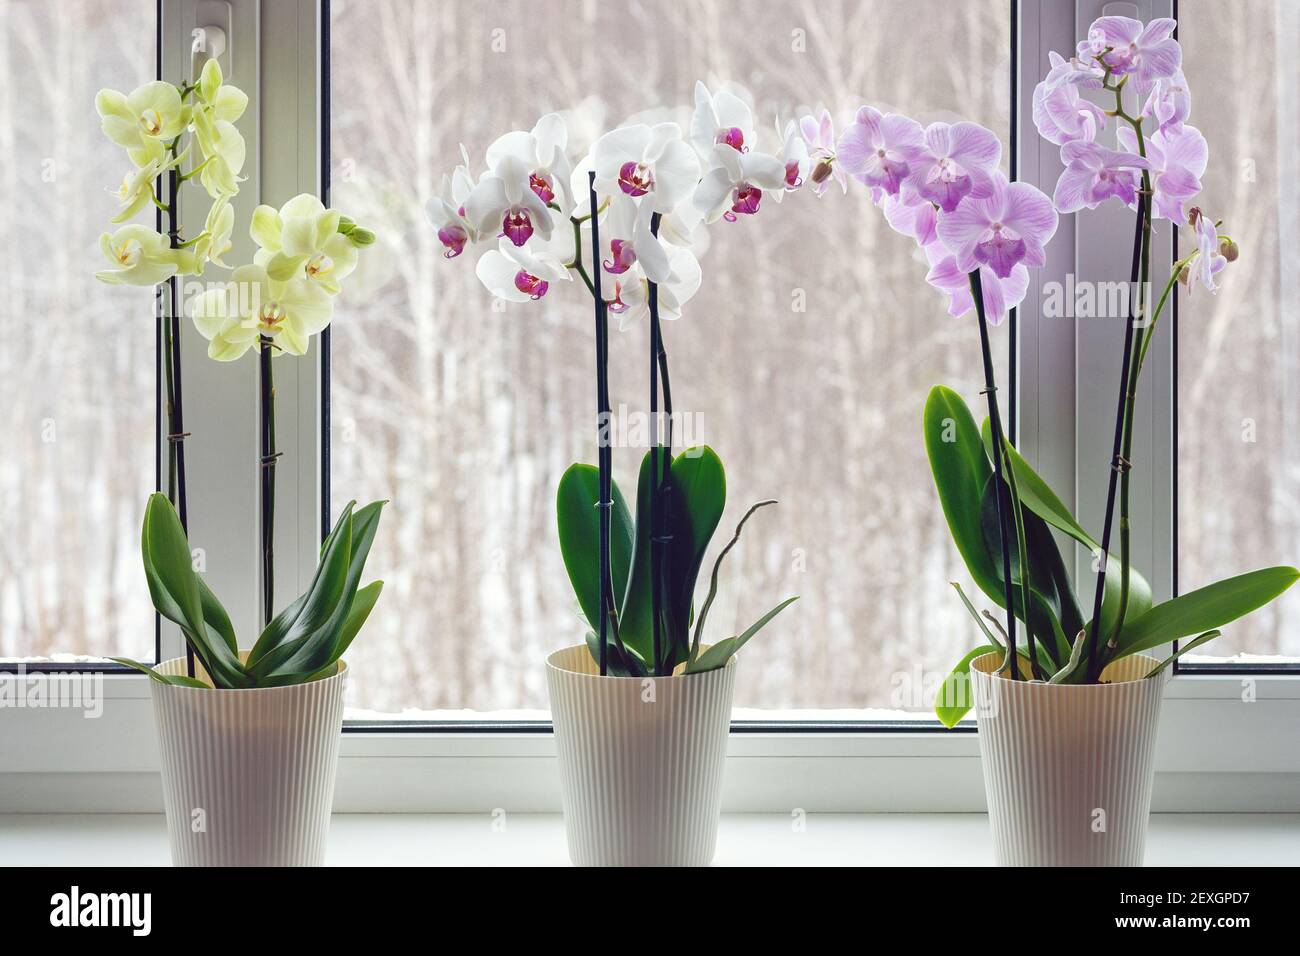 Orquídeas de polilla en el alféizar - decoración del hogar con macetas vivas plantas en flor Foto de stock